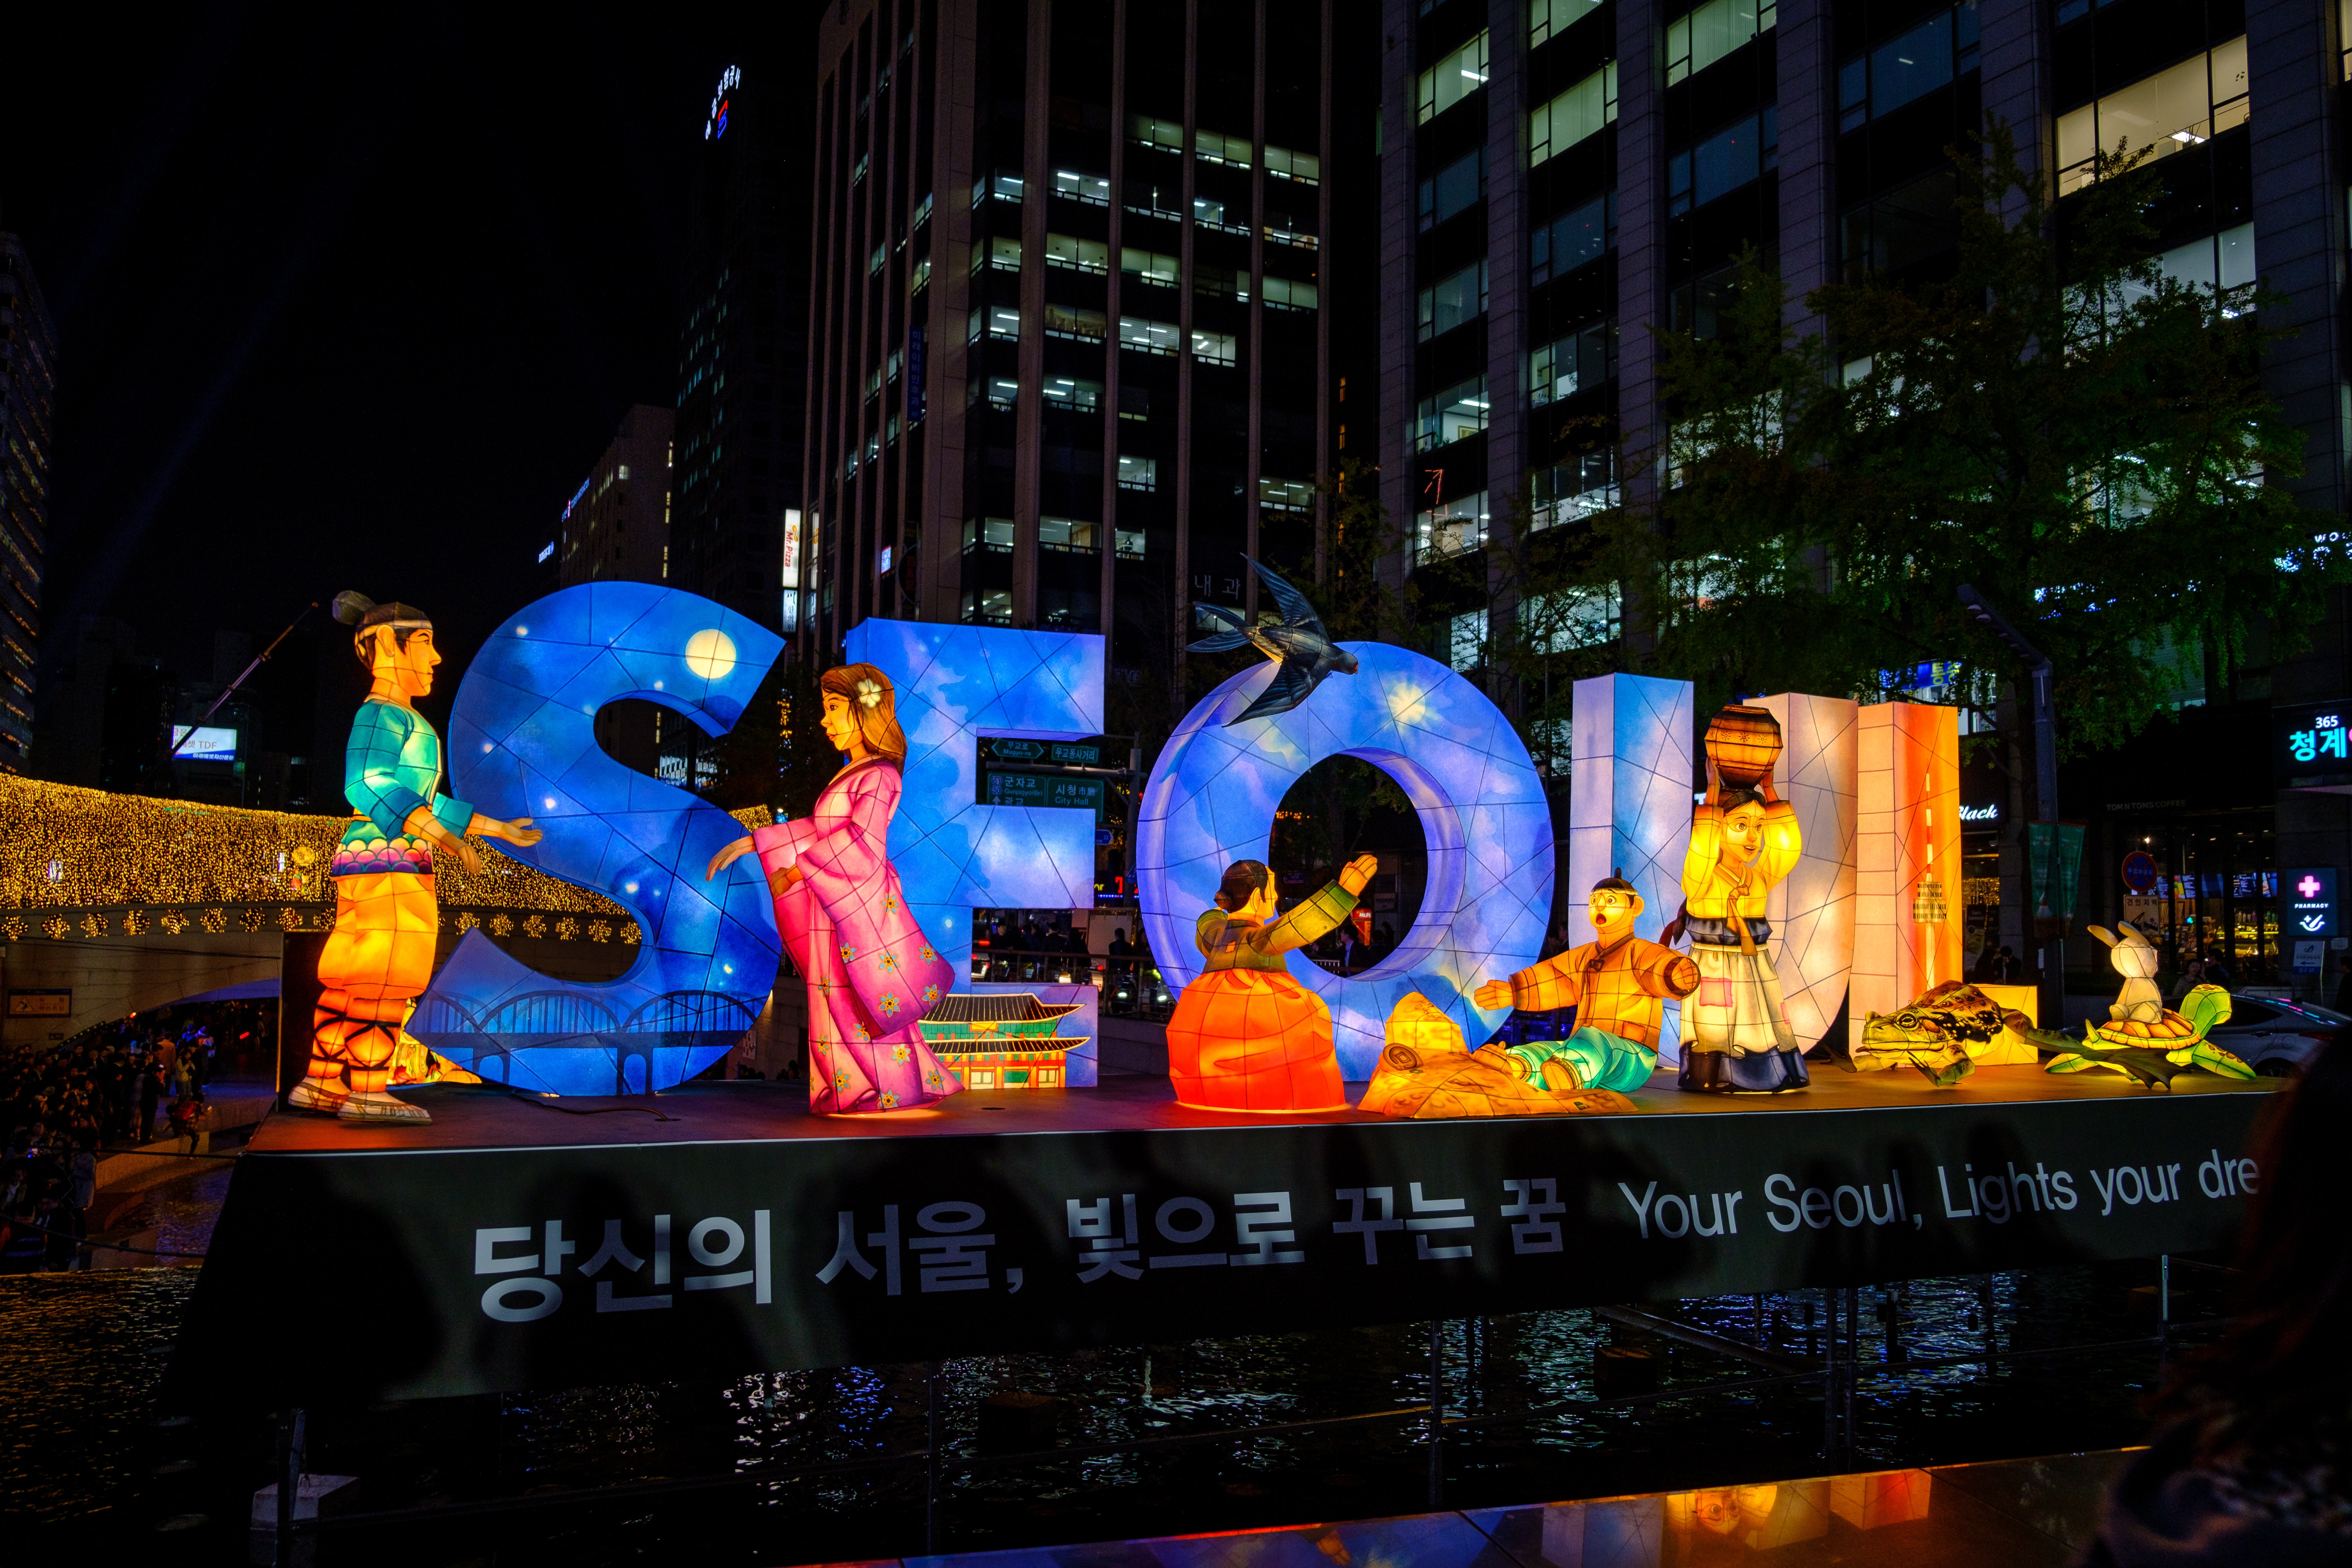 The Exploring Art Tour: Seoul